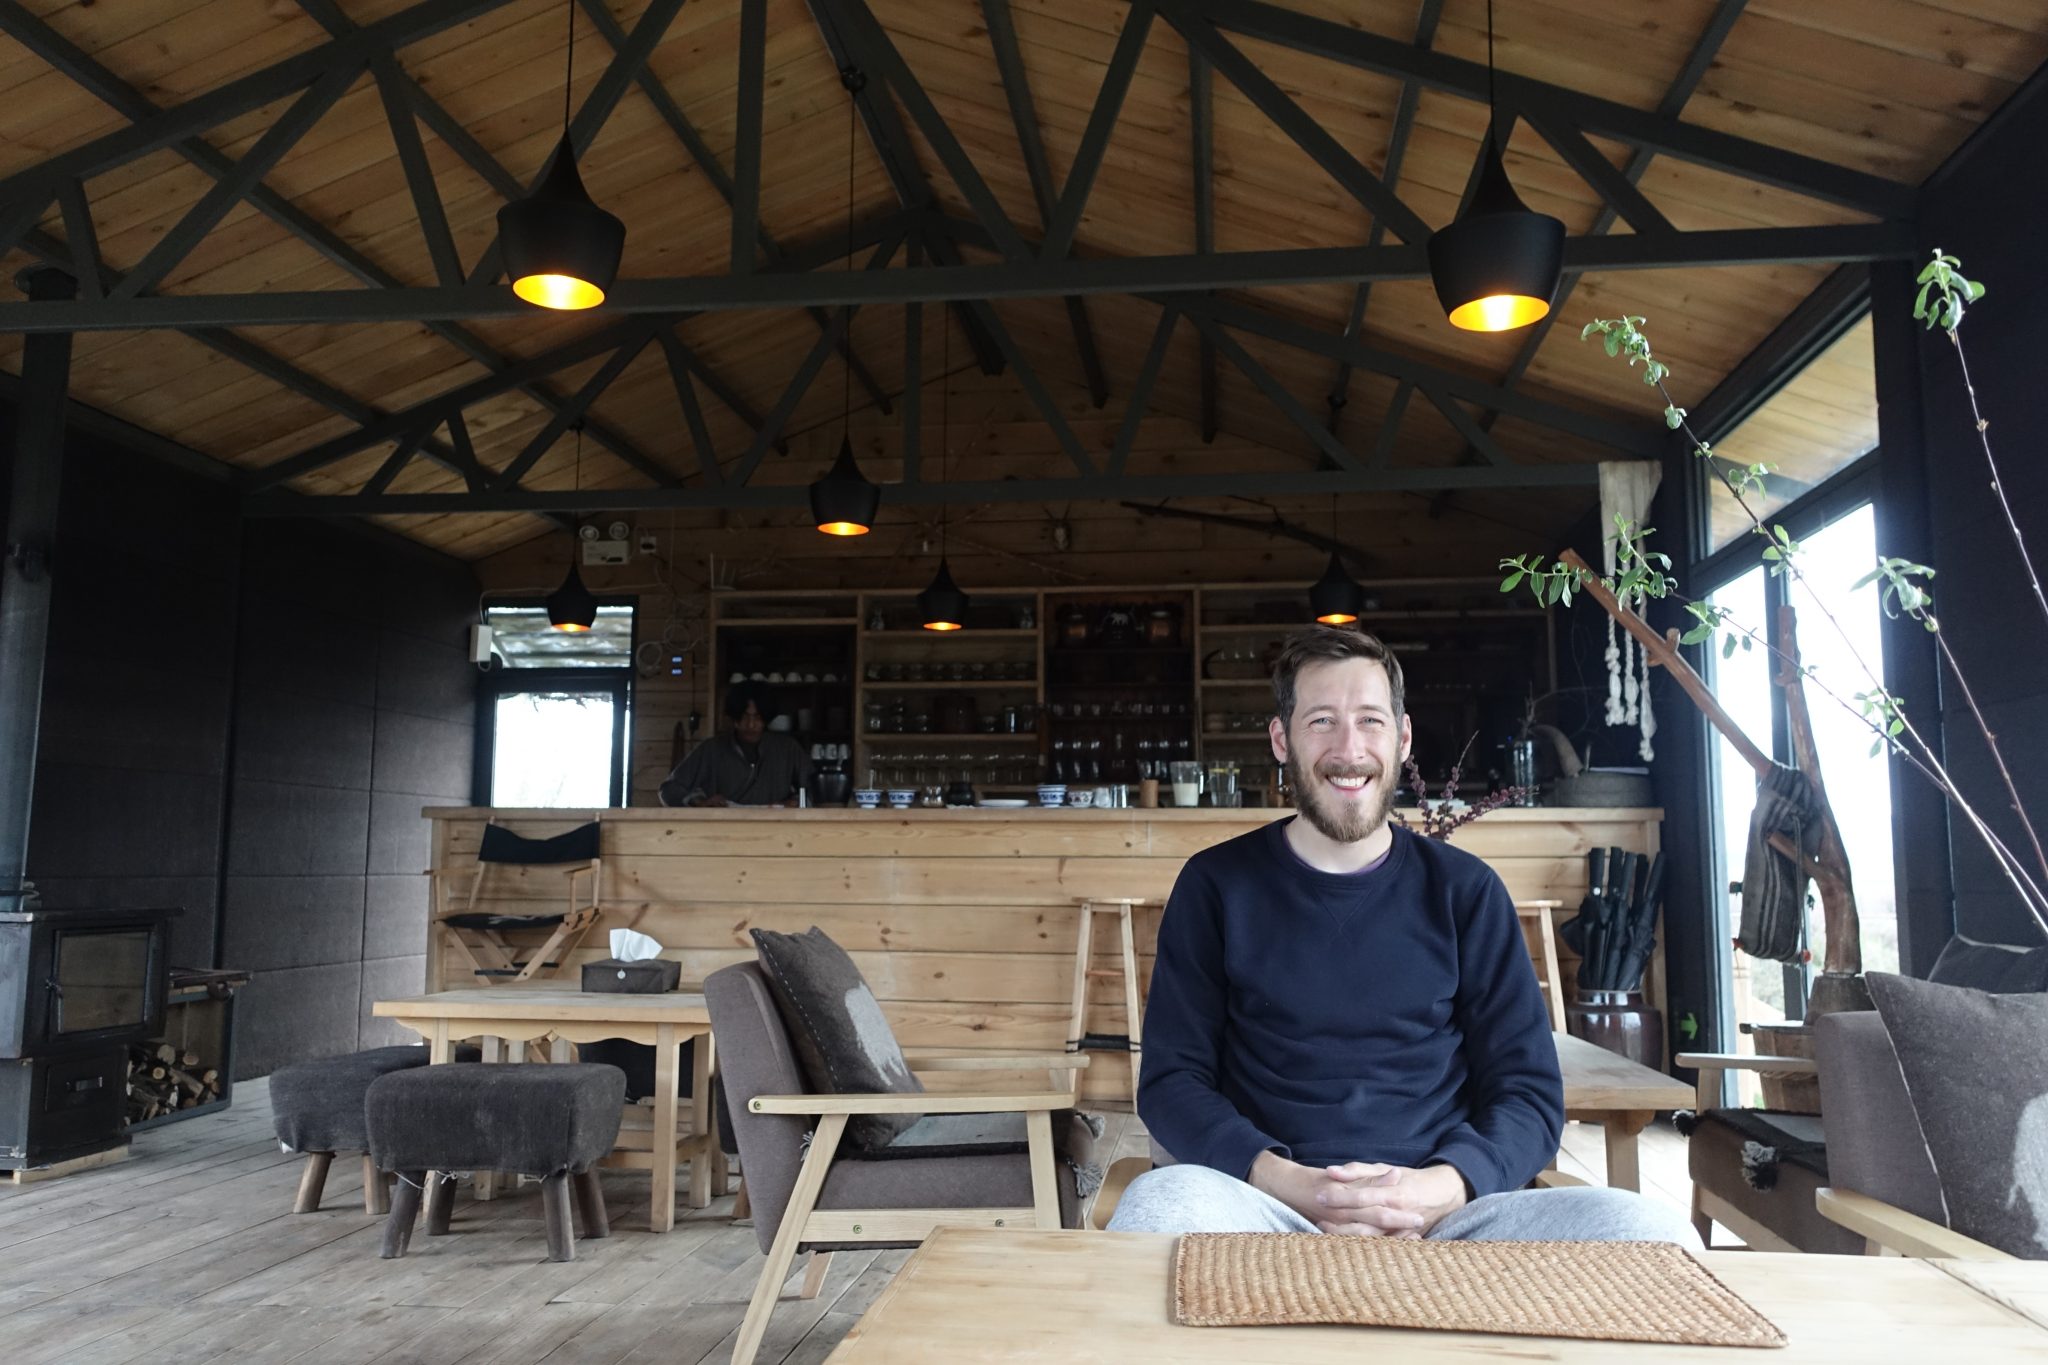 Scott Mallinson, web designer, developer and digital specialist, sat in a restaurant in Gansu province